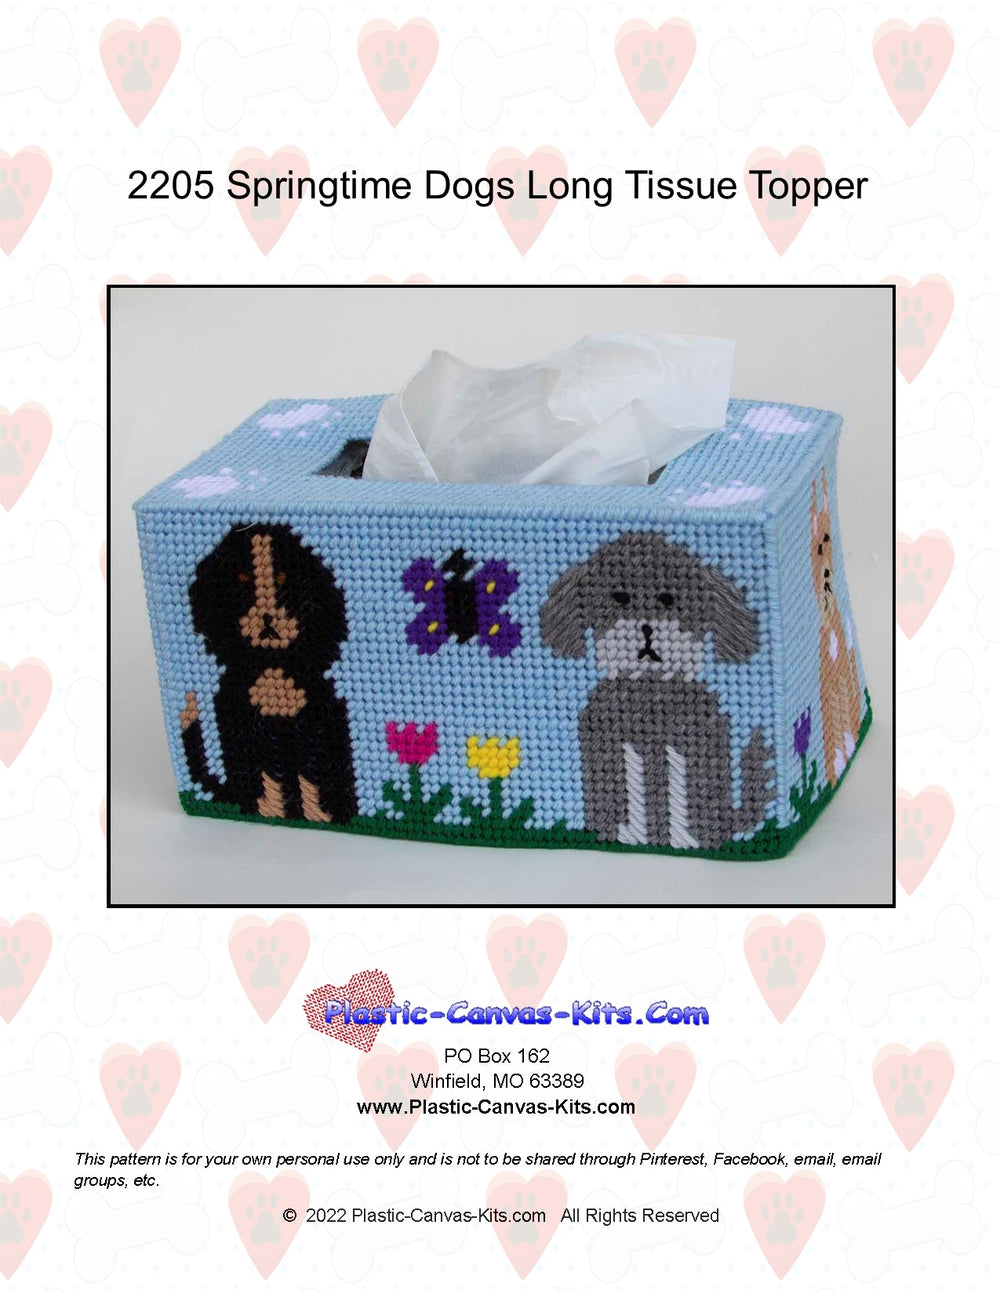 Springtime Dogs Long Tissue Topper